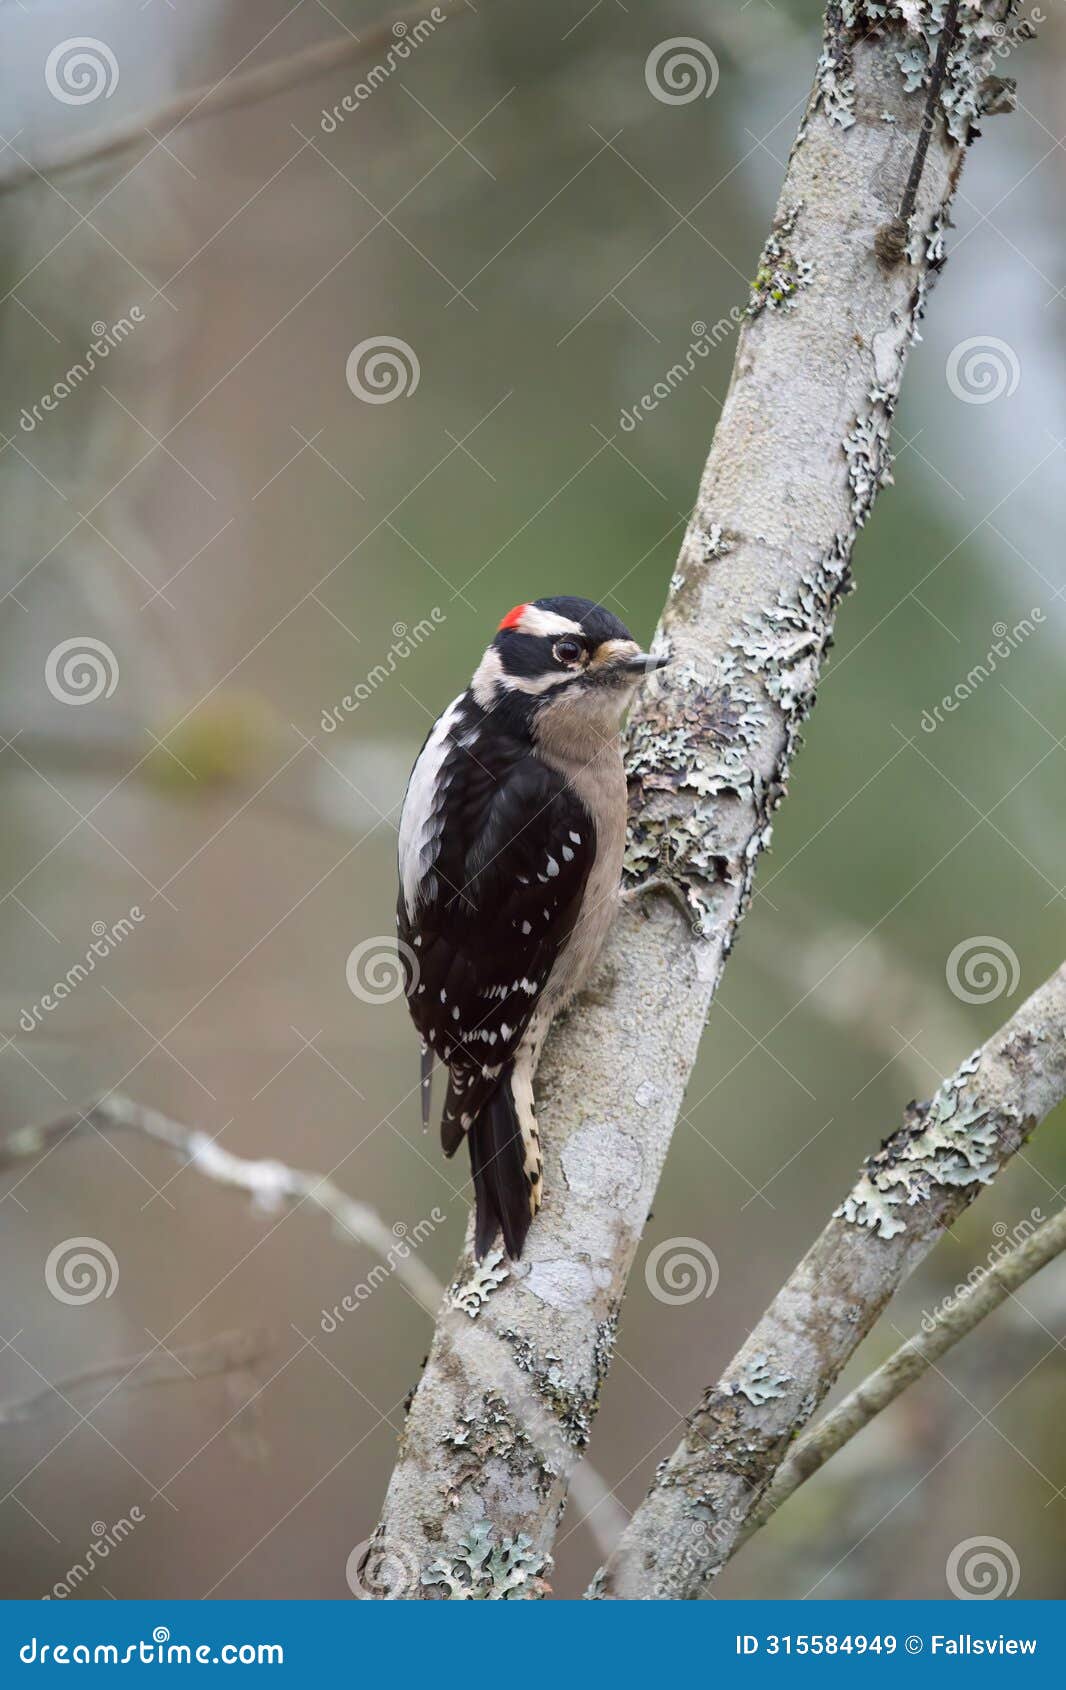 downy woodpecker feeding in forest